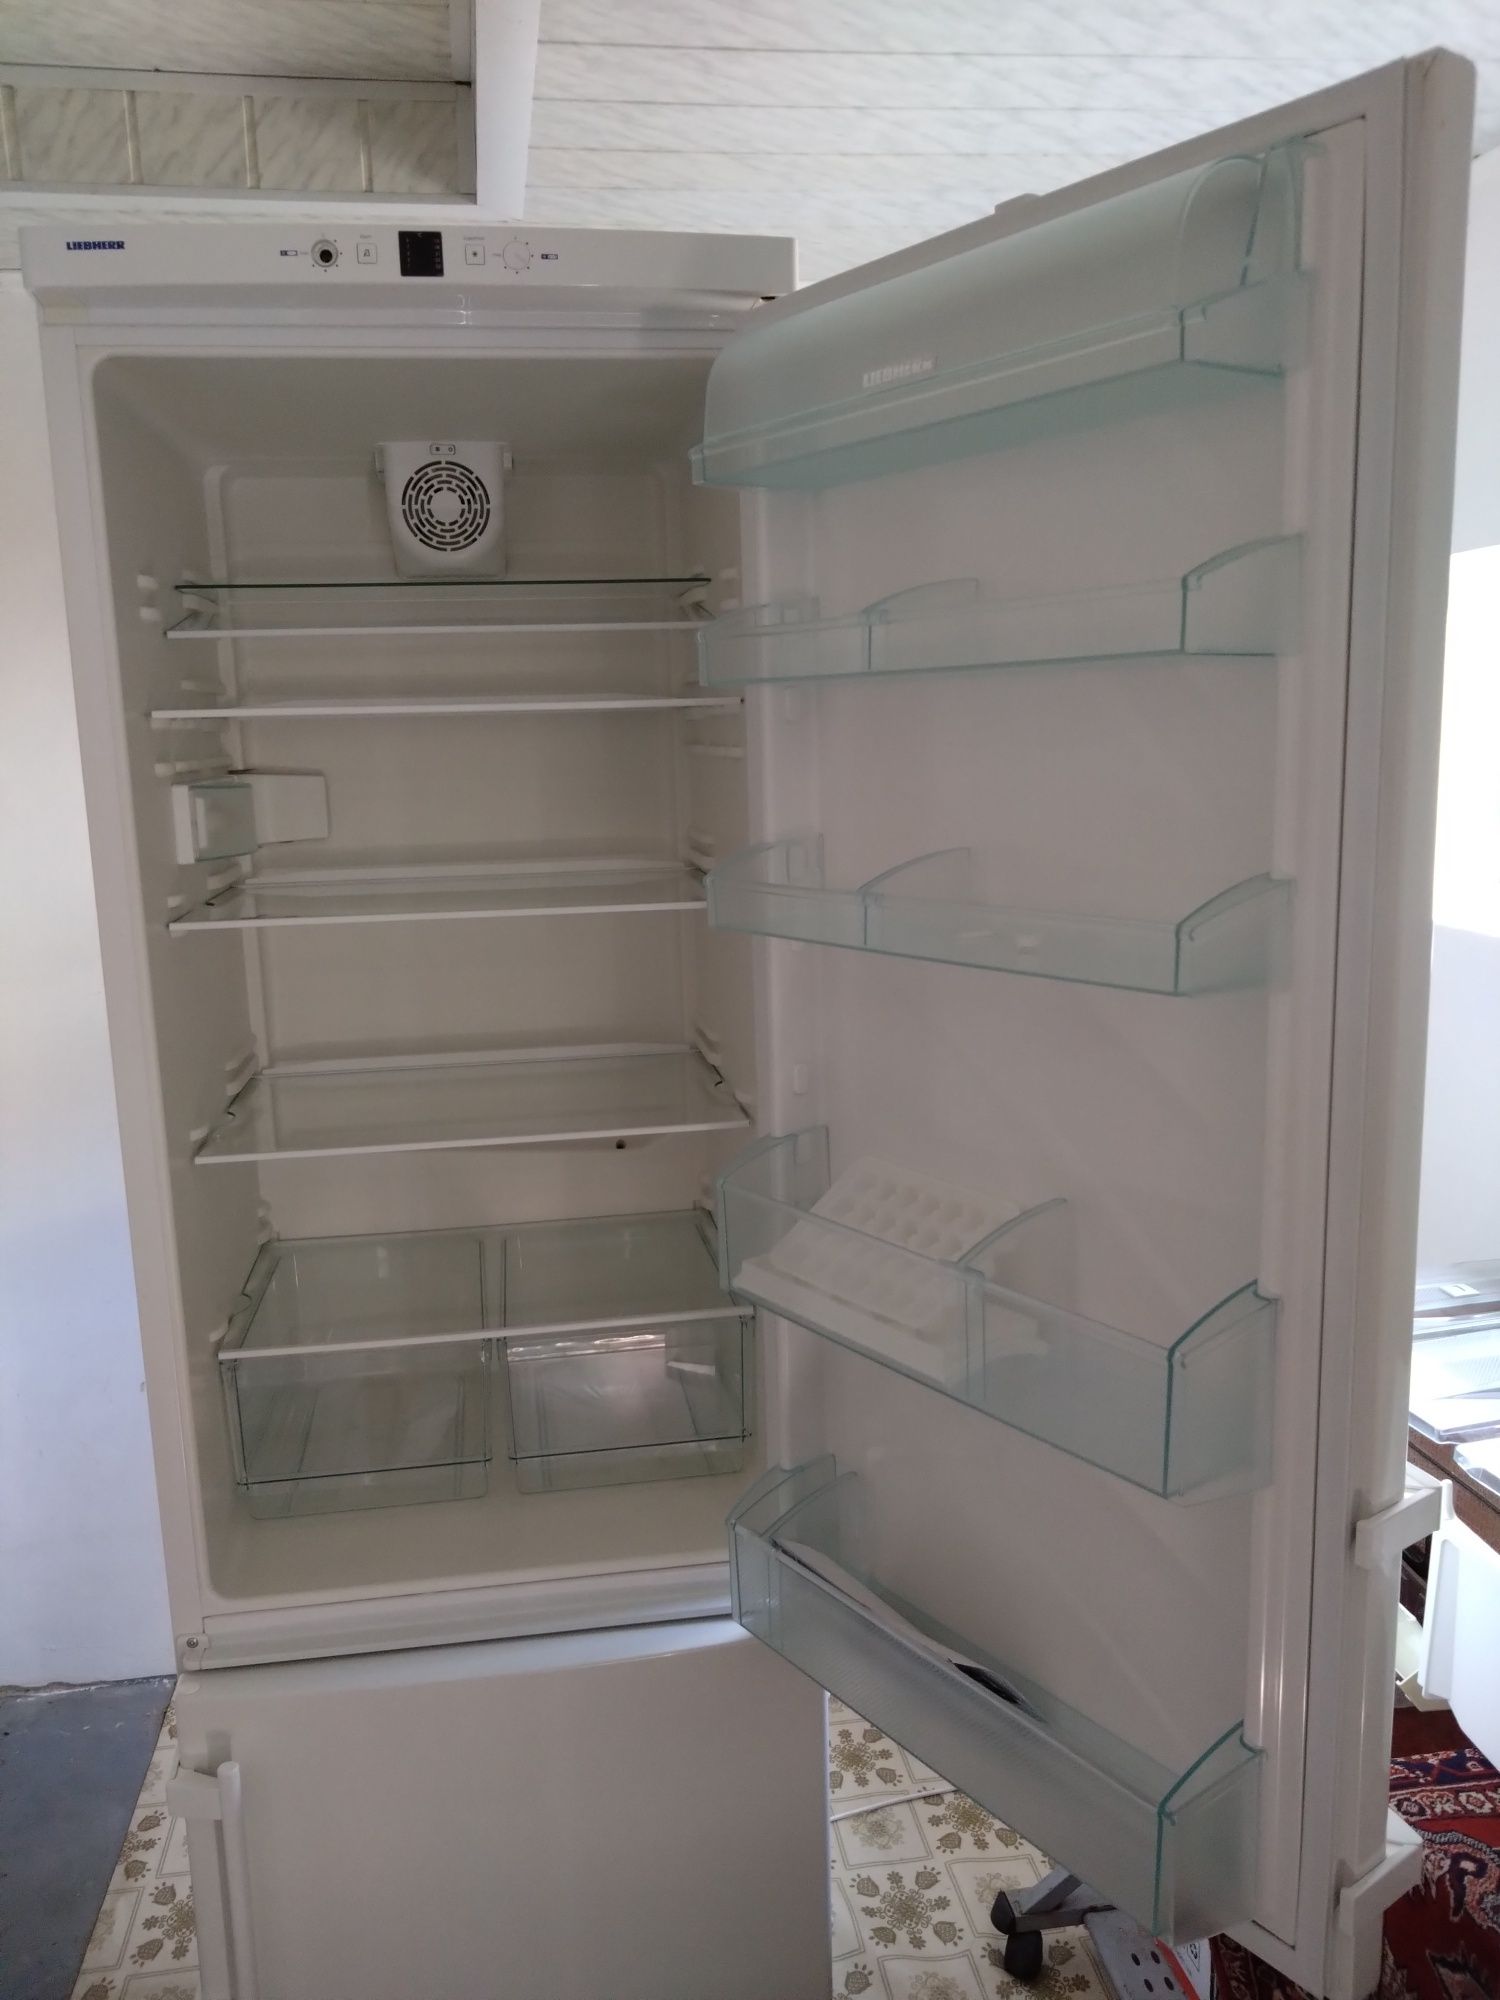 Холодильник Liebherr CP 40030 новий під ремонт